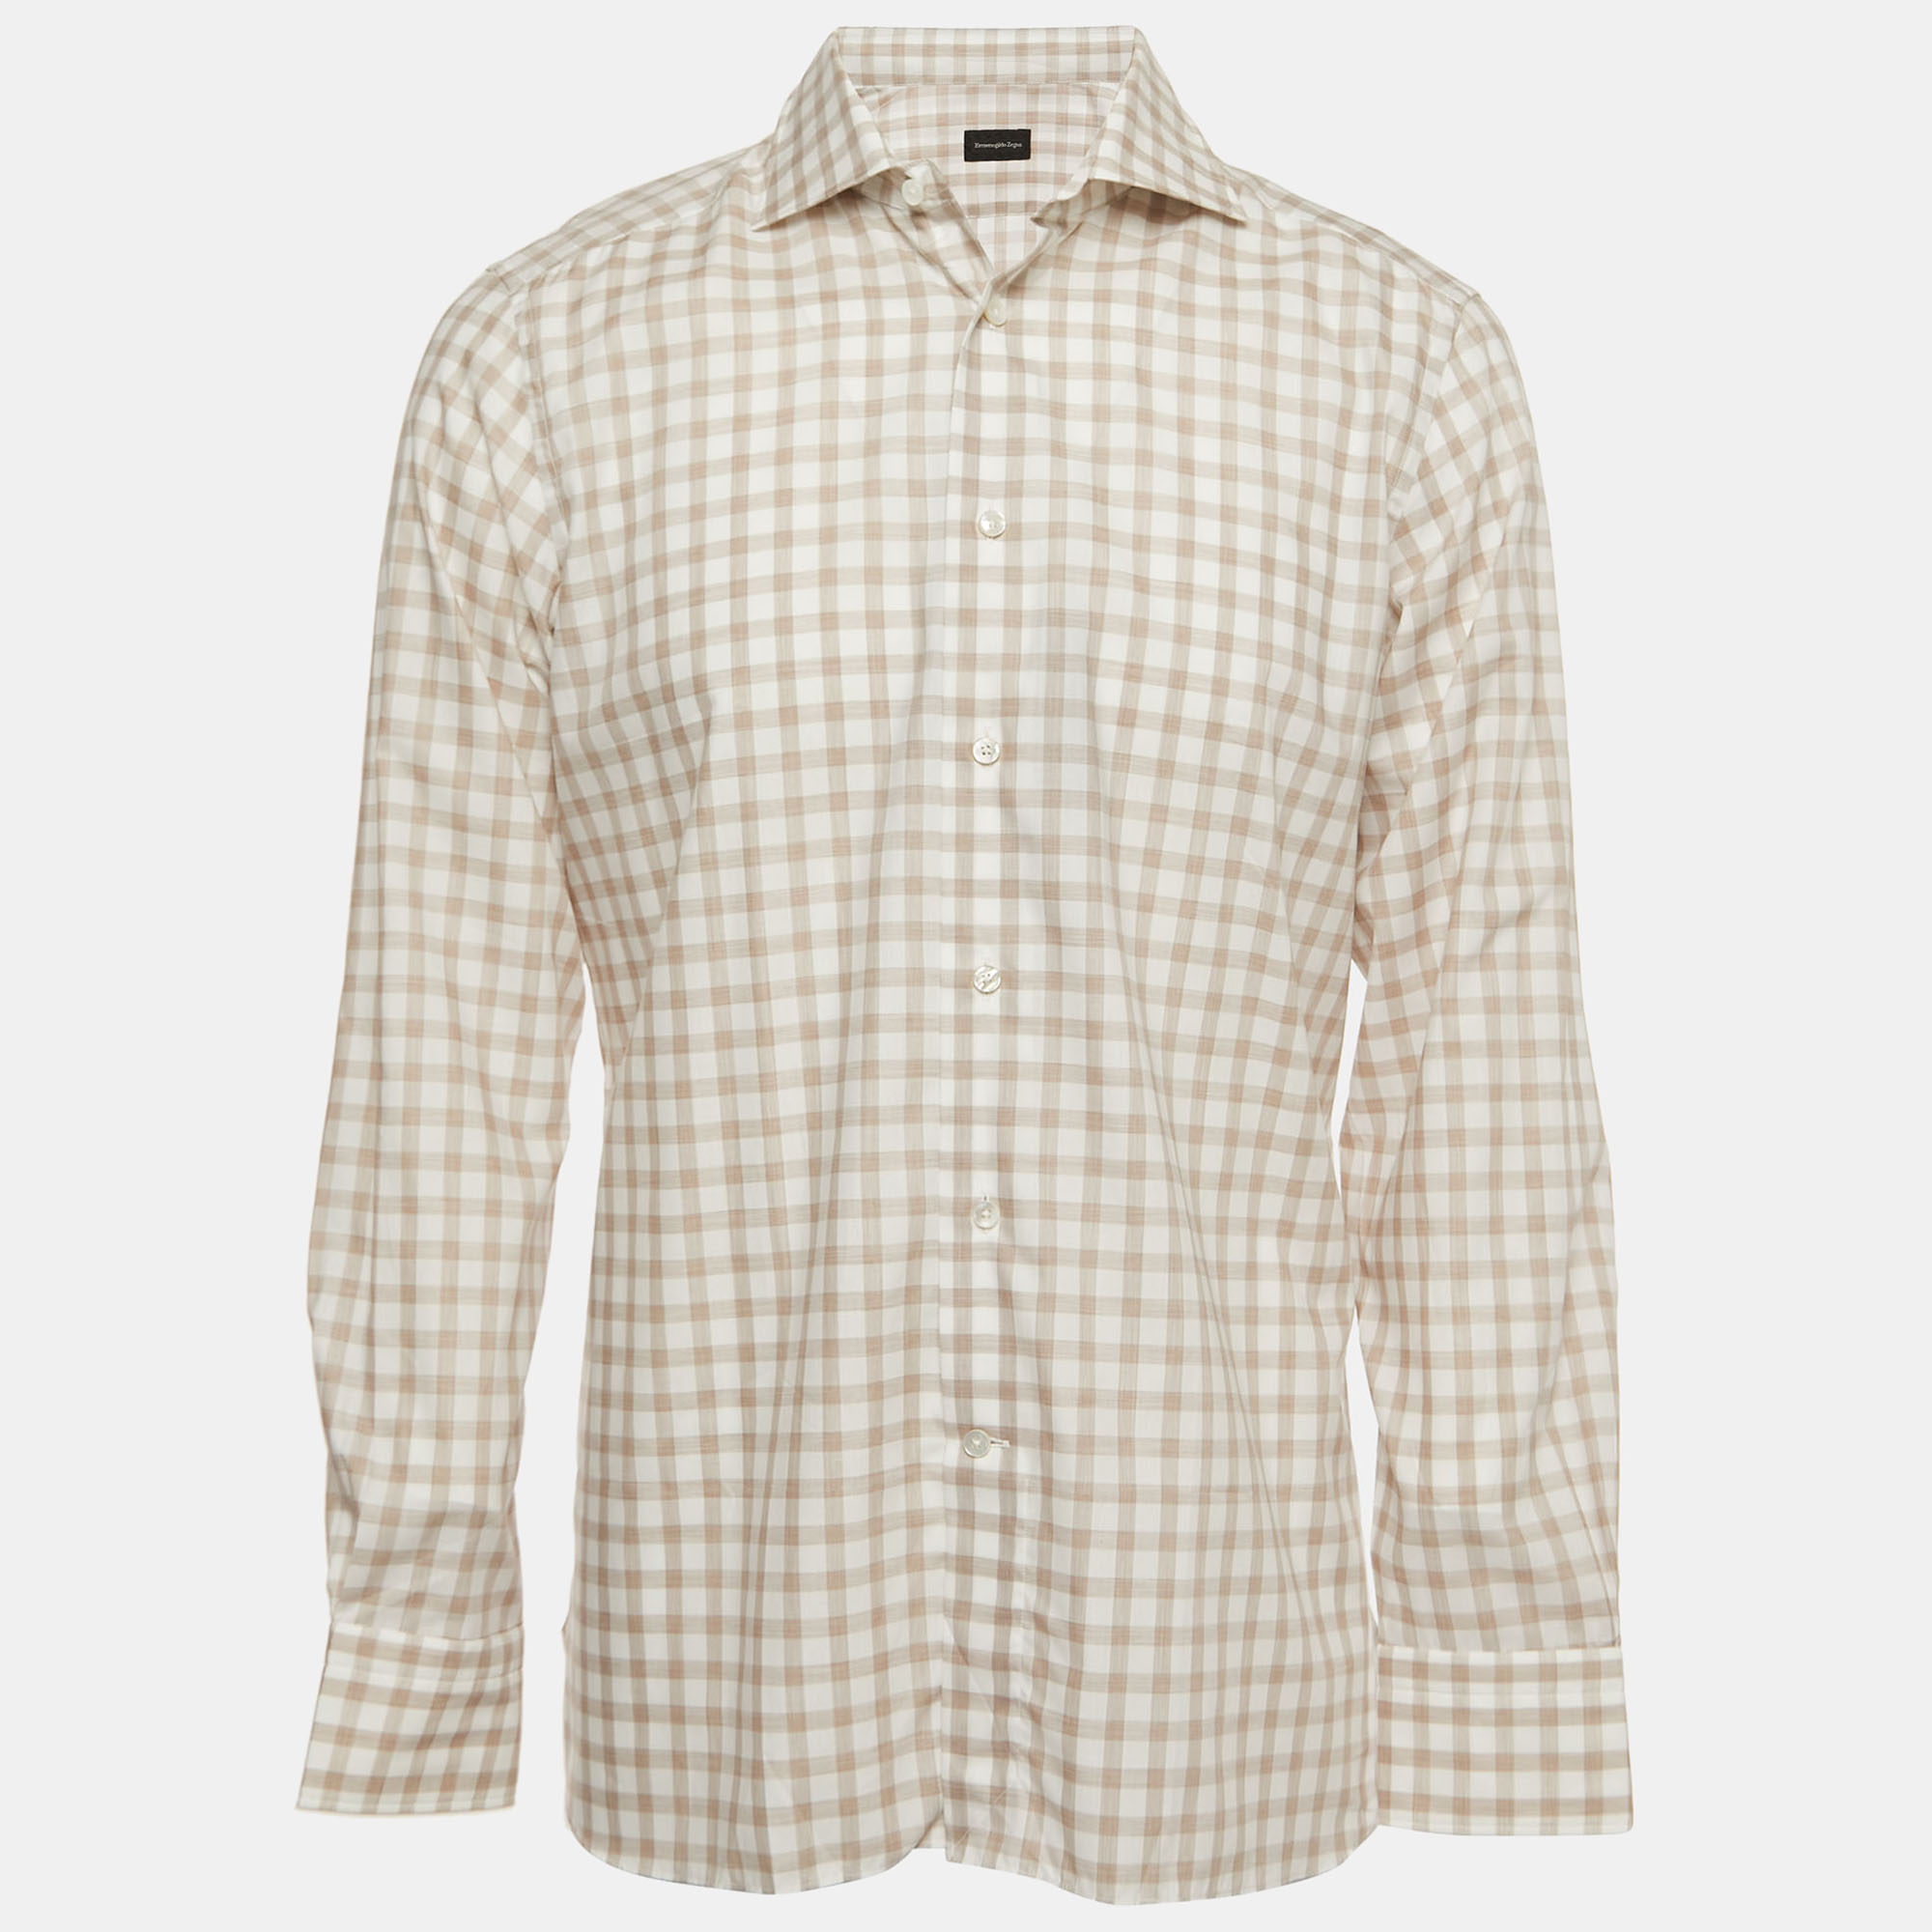 Ermenegildo Zegna White Checked Cotton Full Sleeve Shirt XL